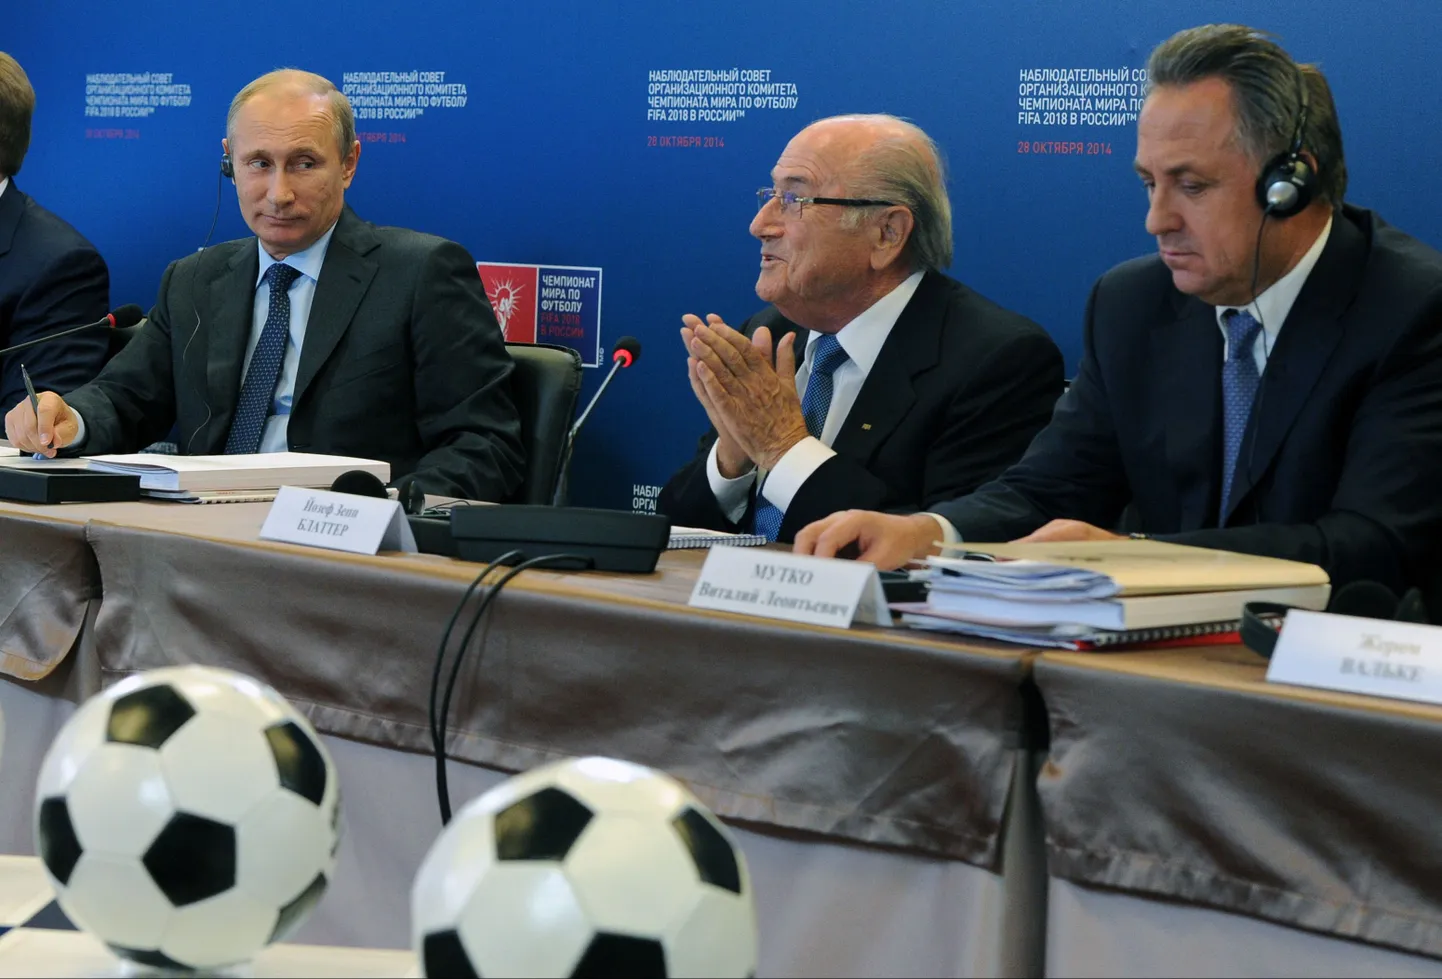 Заседание Наблюдательного совета ЧМ-2018 в Москве. Слева-направо: Владимир Путин, Йозеф Блаттер, министр спорта РФ Виталий Мутко.